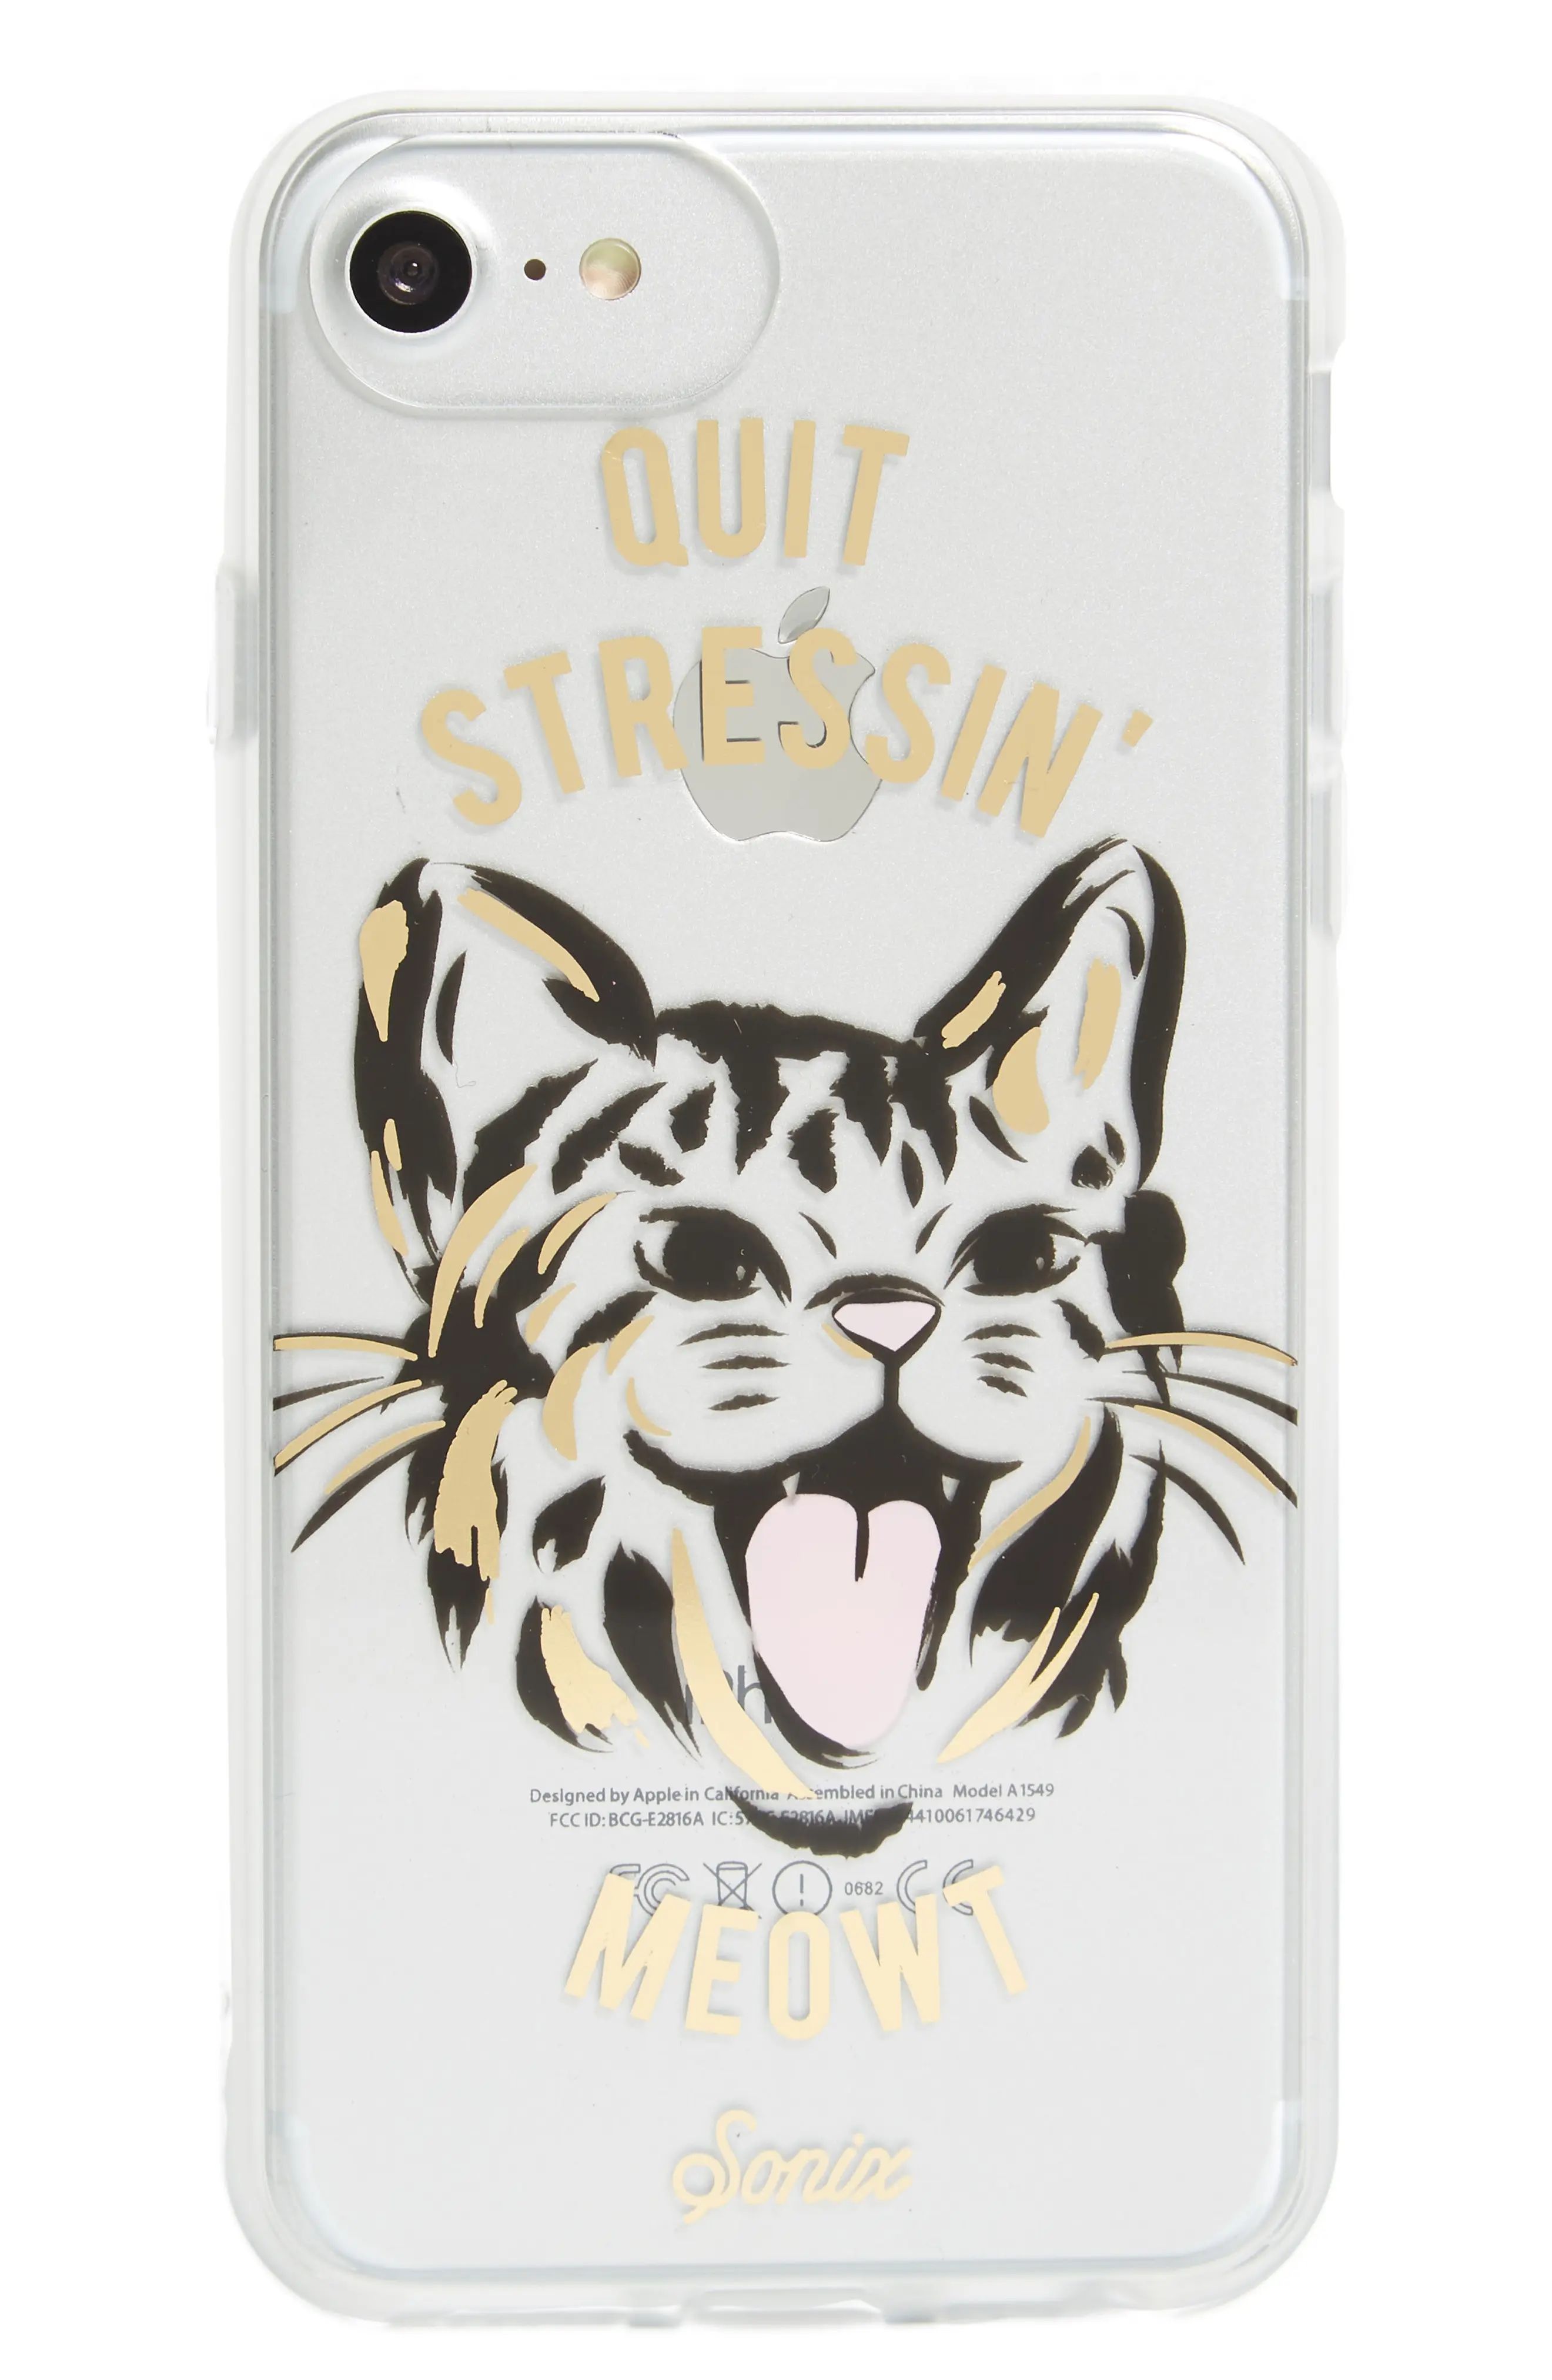 Quit Stressin' Meowt iPhone 6/6s/7/8 & 6/6s/7/8 Plus Case | Nordstrom